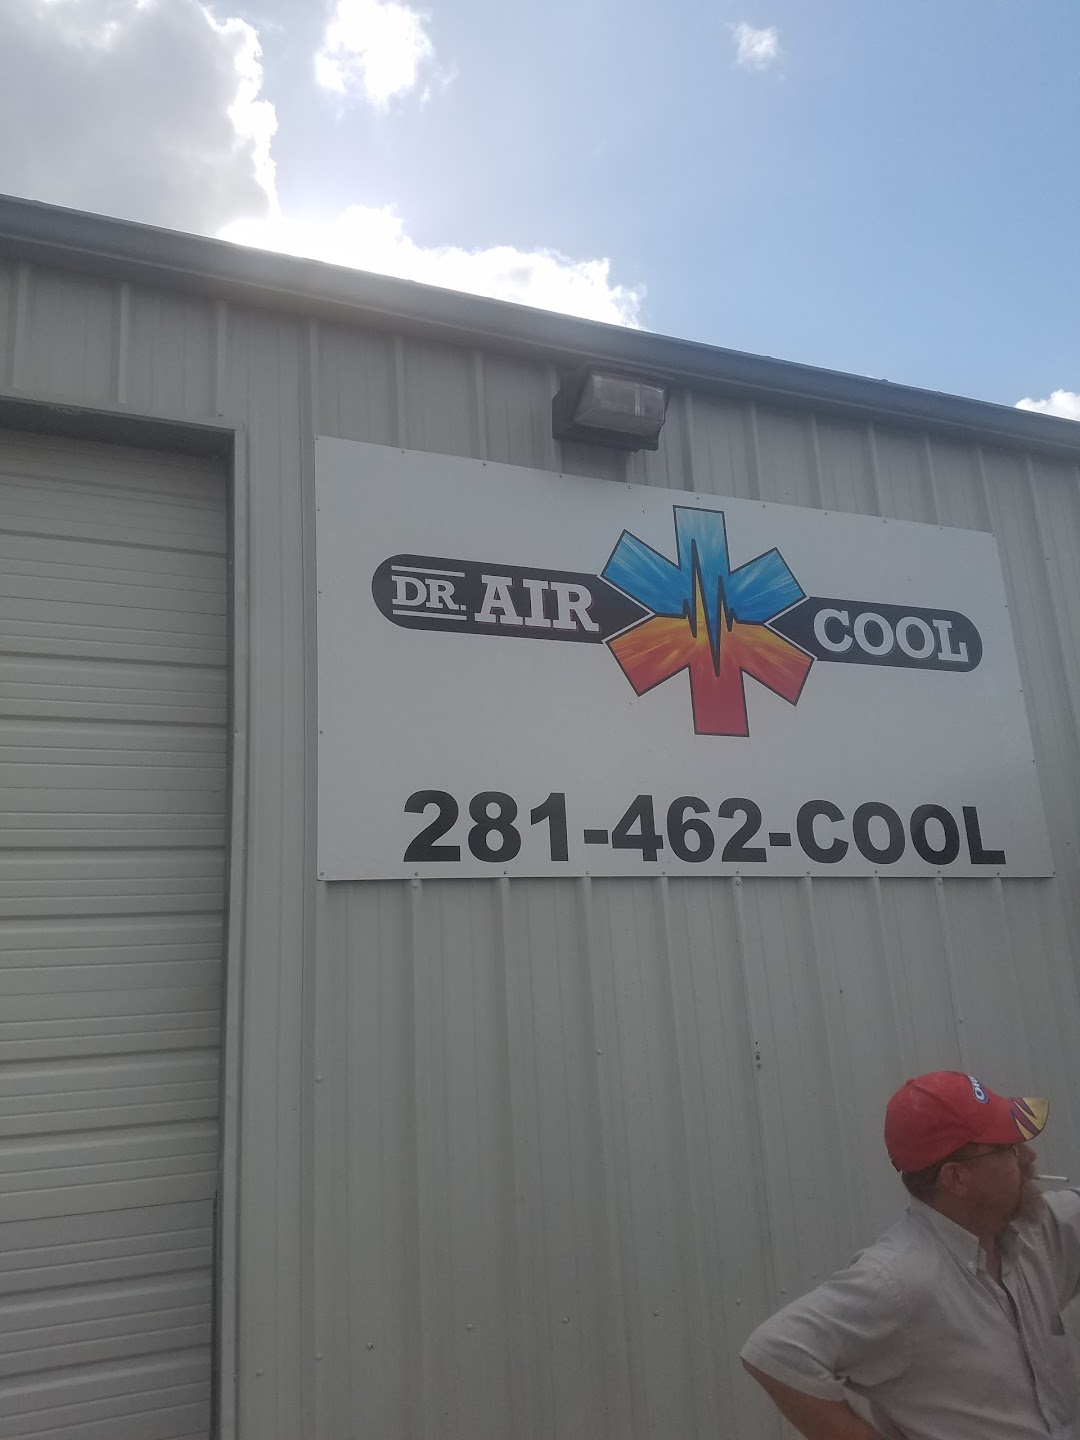 Dr. Air Cool